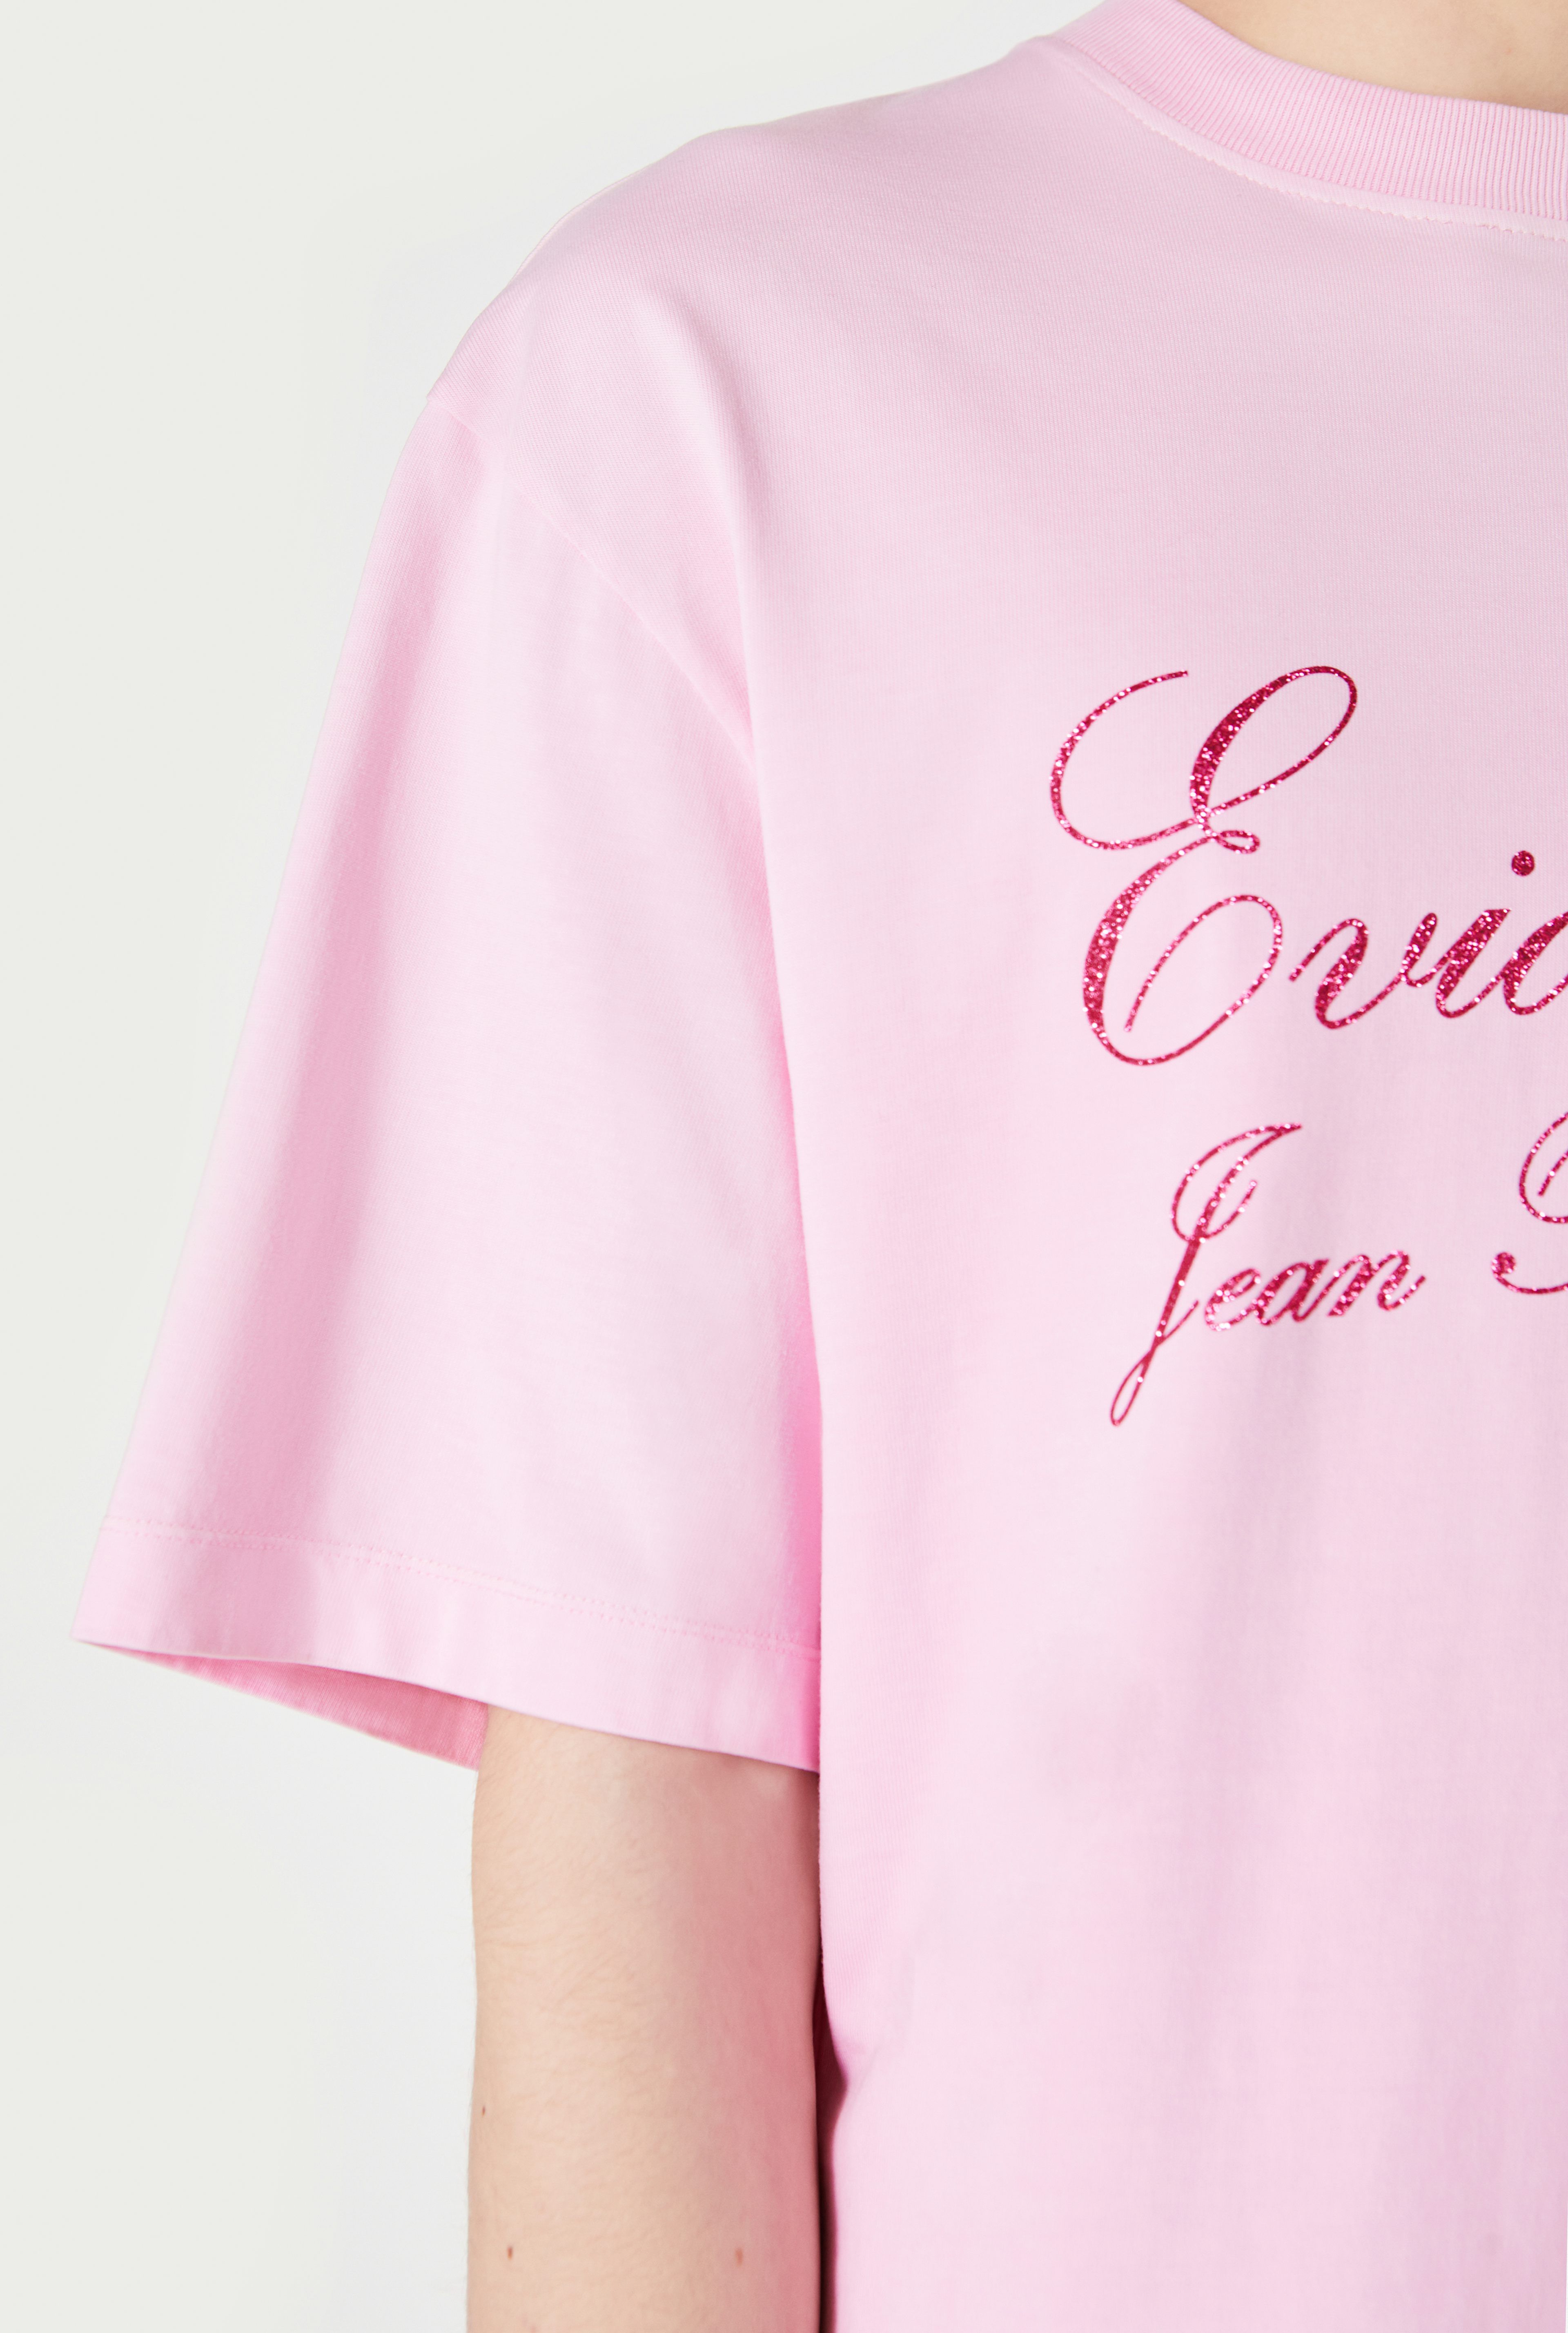 The Pink Évidemment T-Shirt